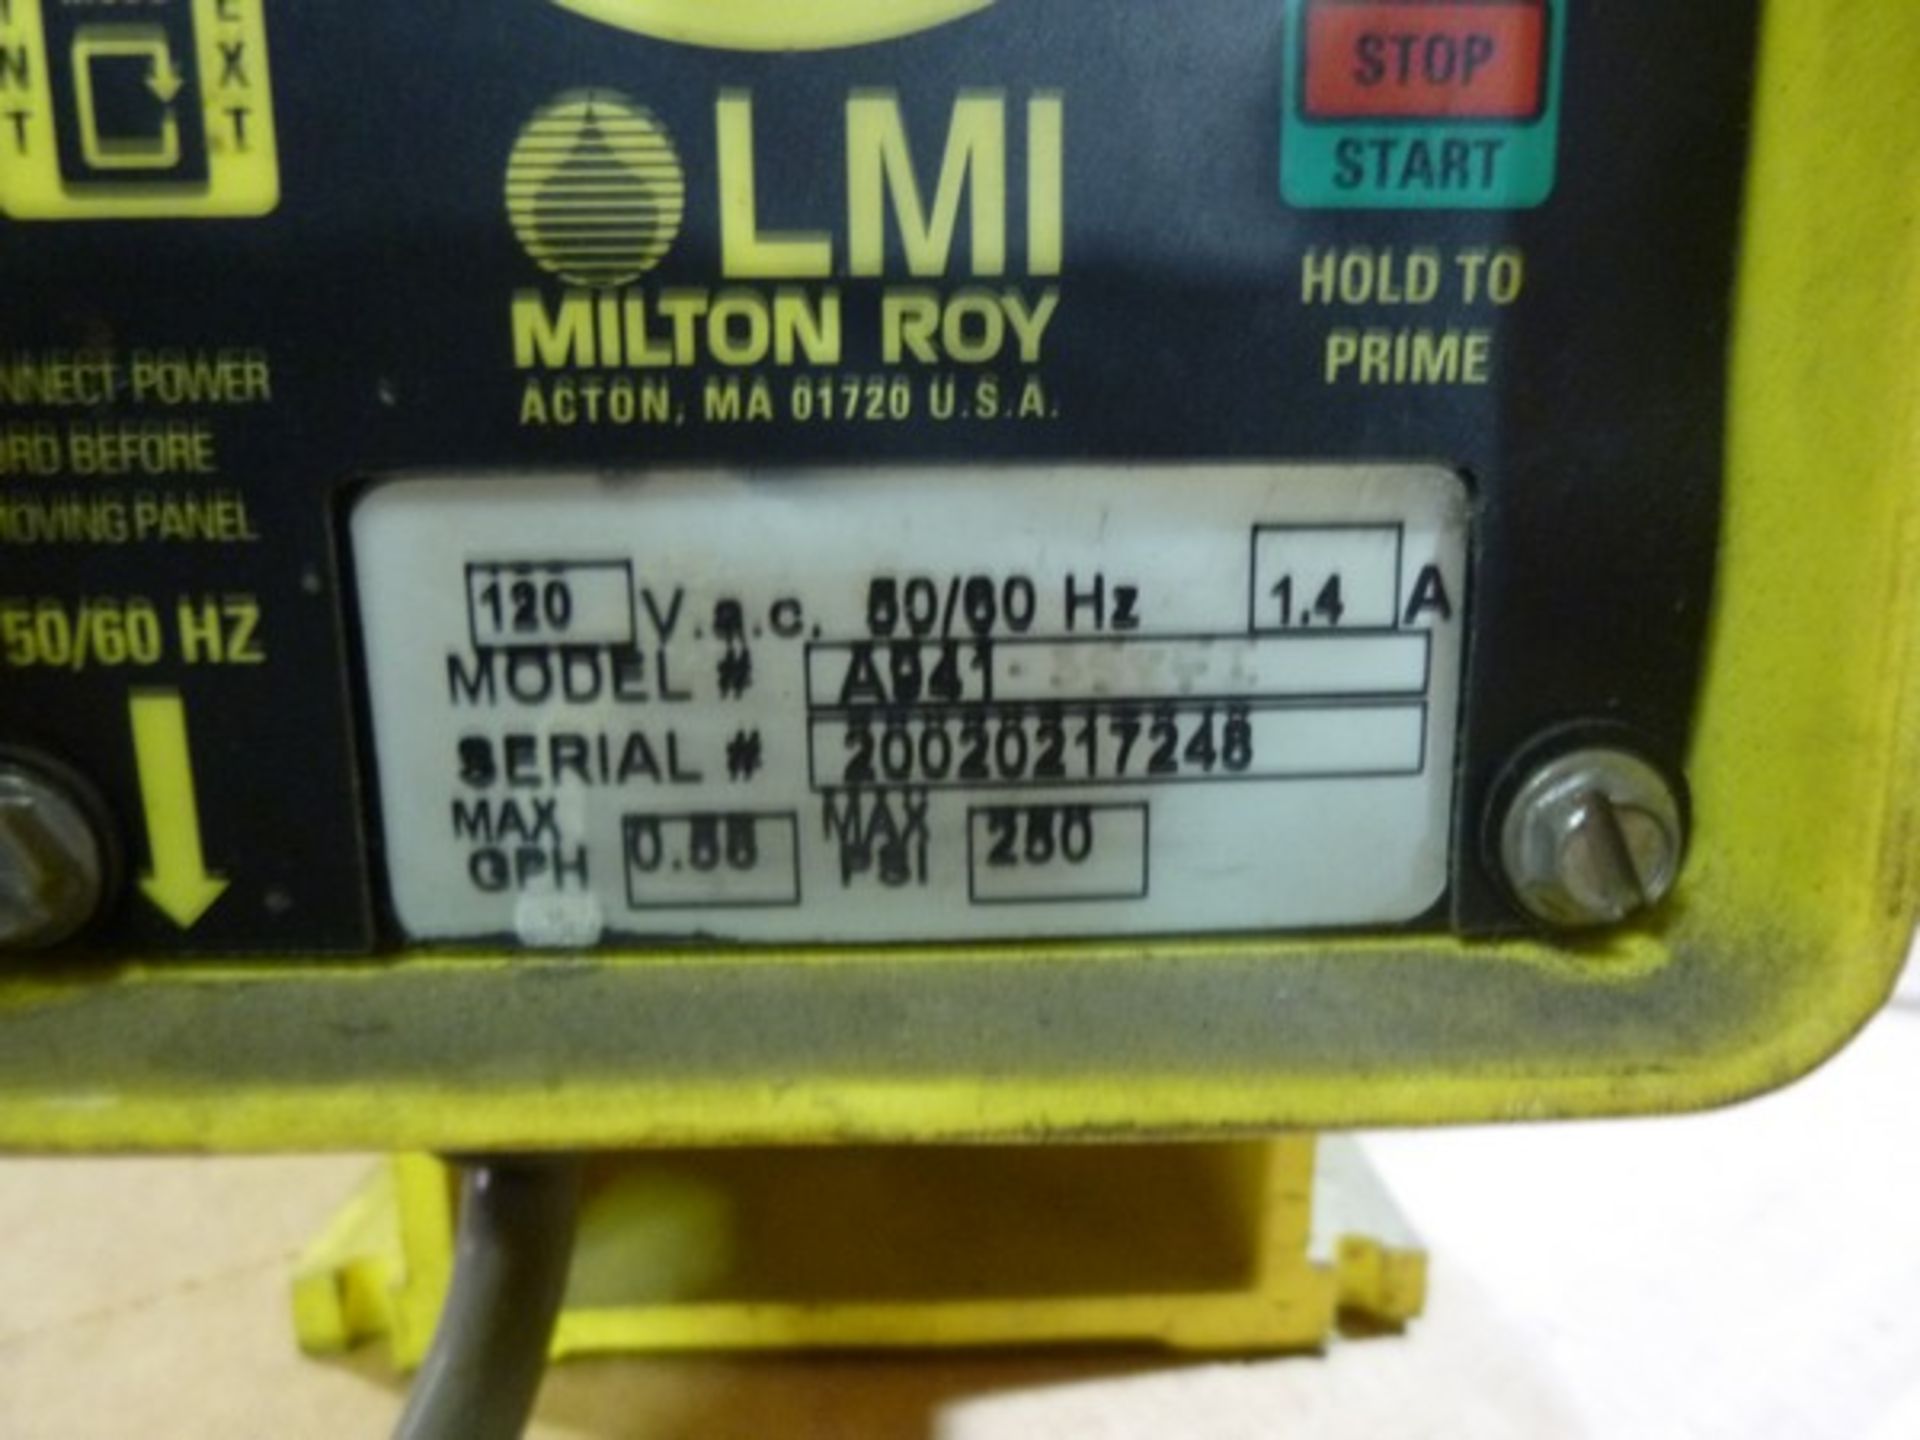 LMI Microprocessor pump Model A941 - Image 3 of 3